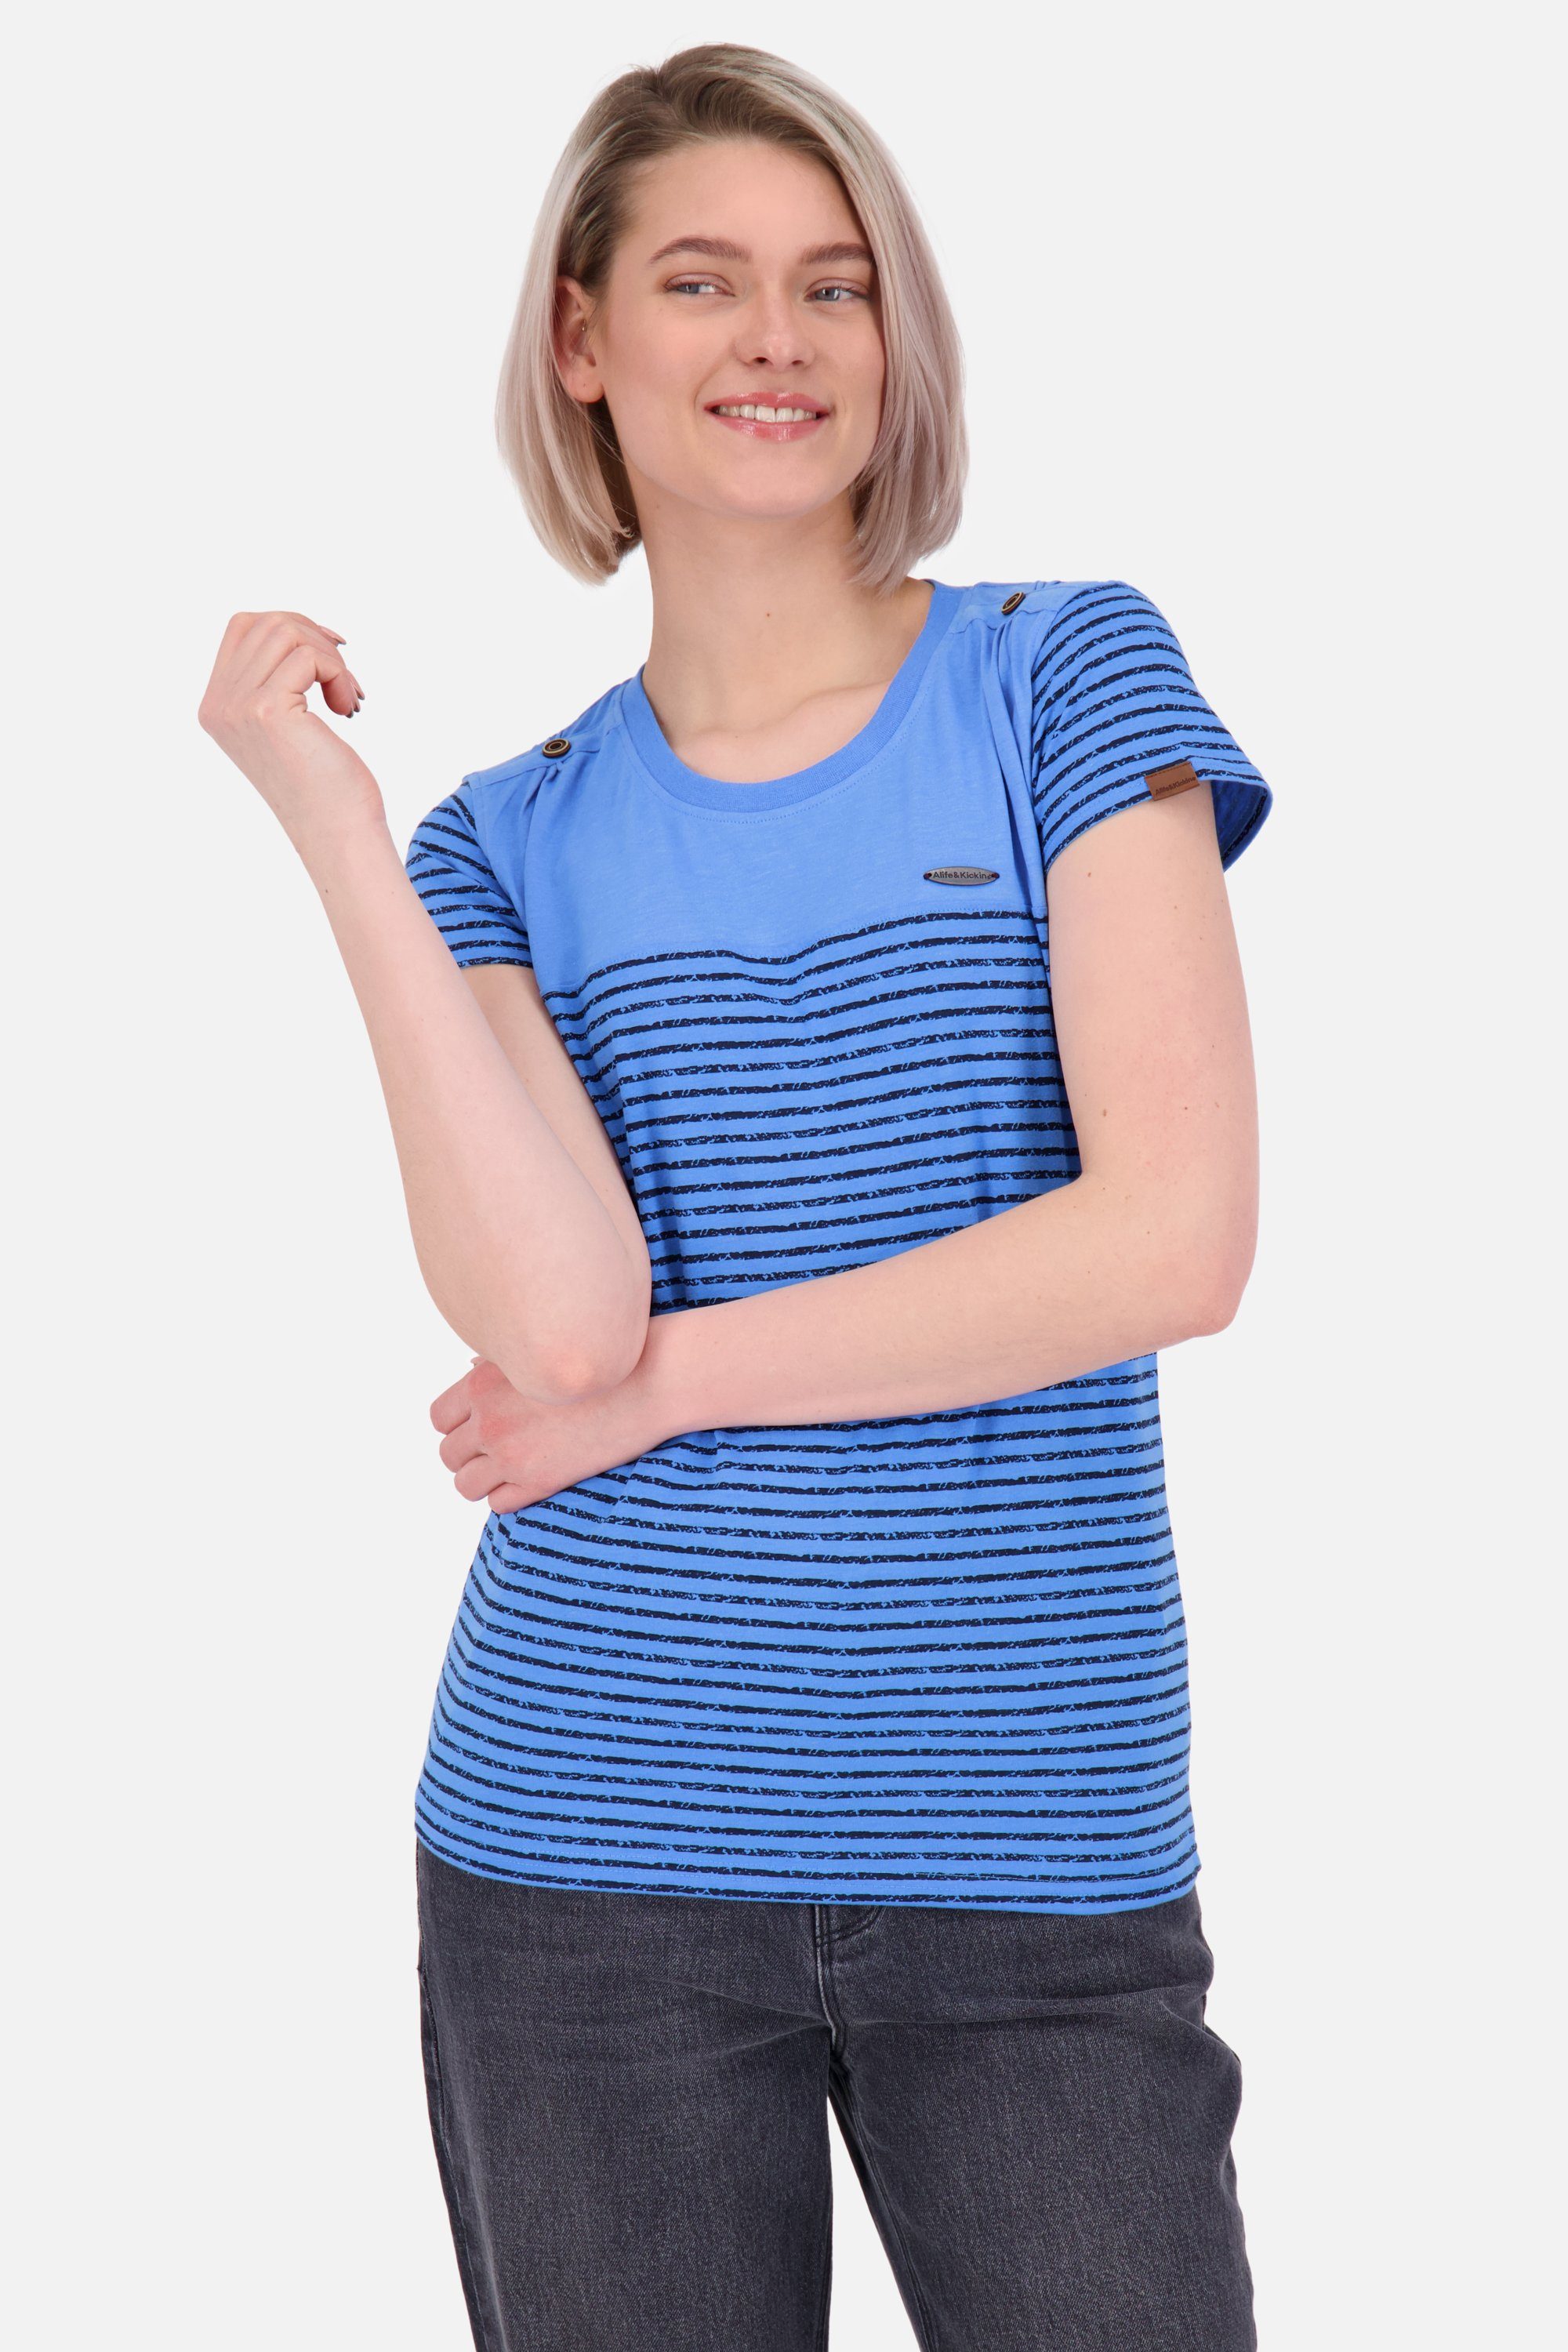 Damen Shirt Shirt & azure Kickin LioAK Rundhalsshirt Alife Kurzarmshirt, Z